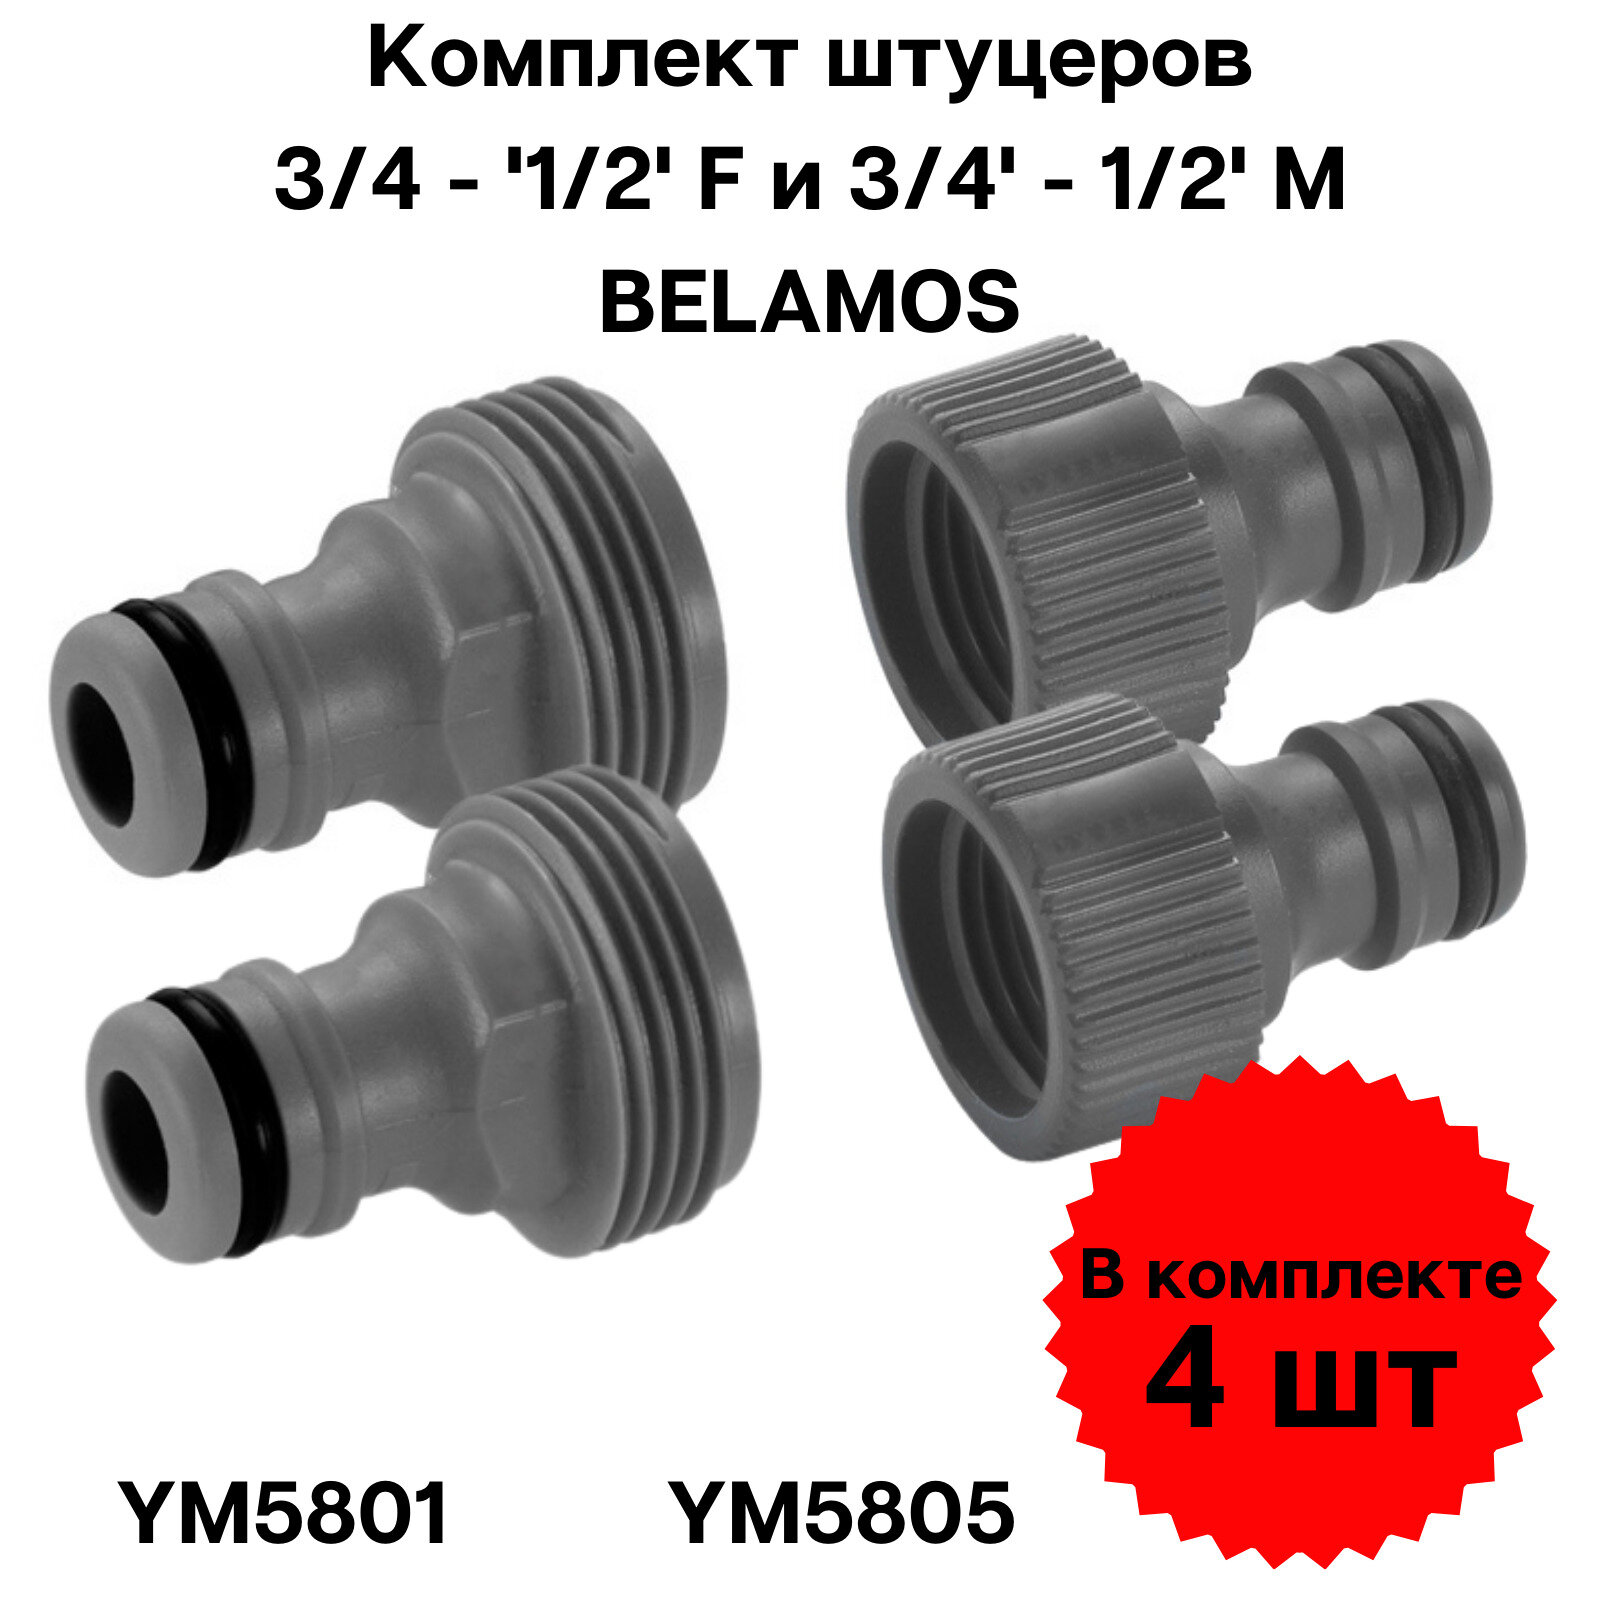 Комплект штуцеров BELAMOS 3/4' F и 3/4' M (4 шт.) подключение для садового шланга переходник для дачи